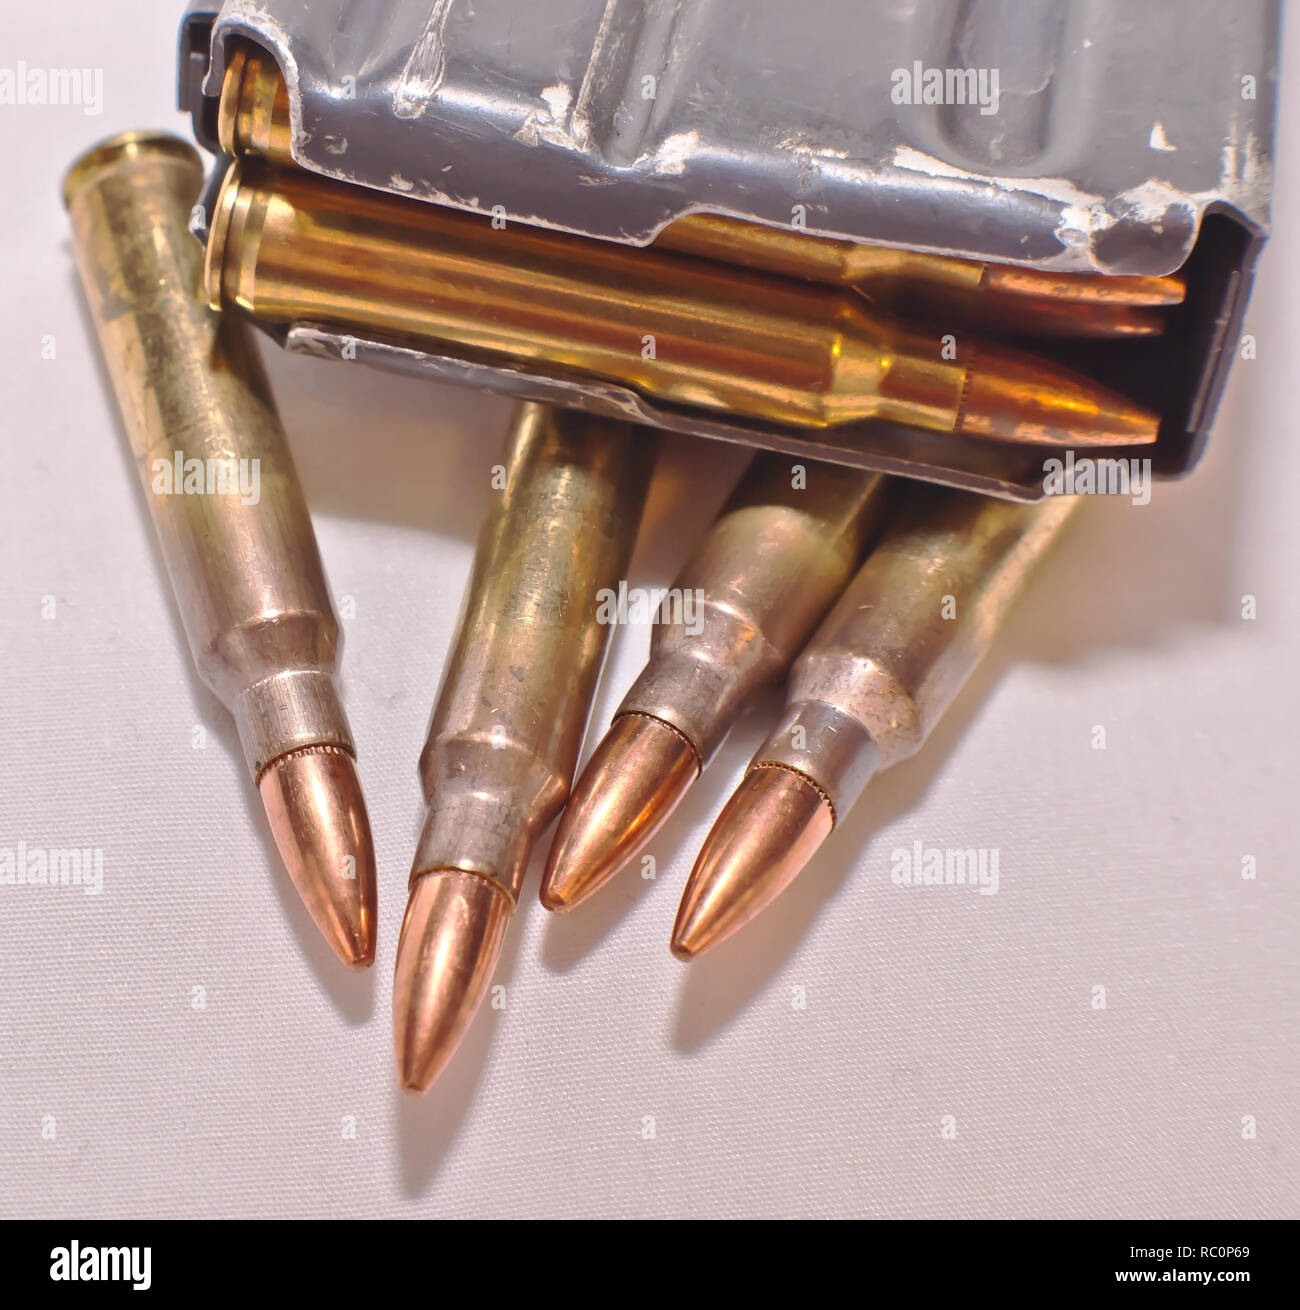 Un caricato AR-15 rifle magazine sulla parte superiore dei quattro .223 pallottole calibro su sfondo bianco Foto Stock